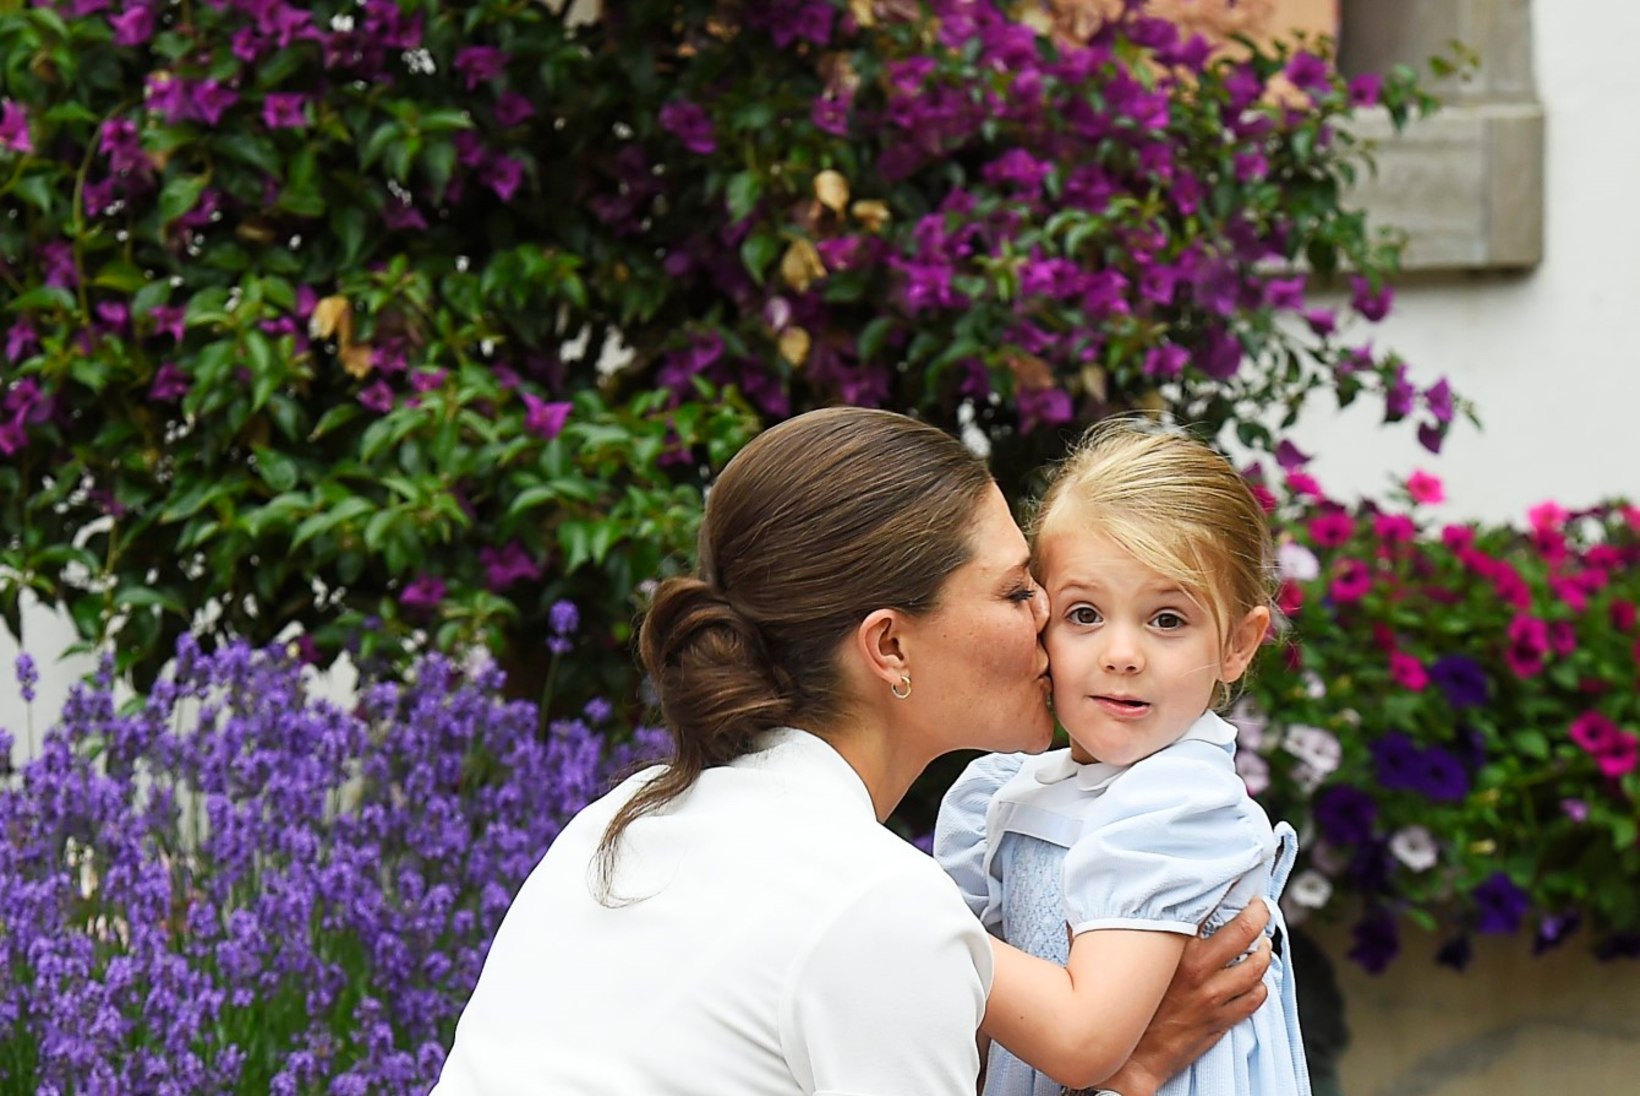 FOTOD | PALJU ÕNNE! Rootsi kroonprintsess tähistas sünnipäeva